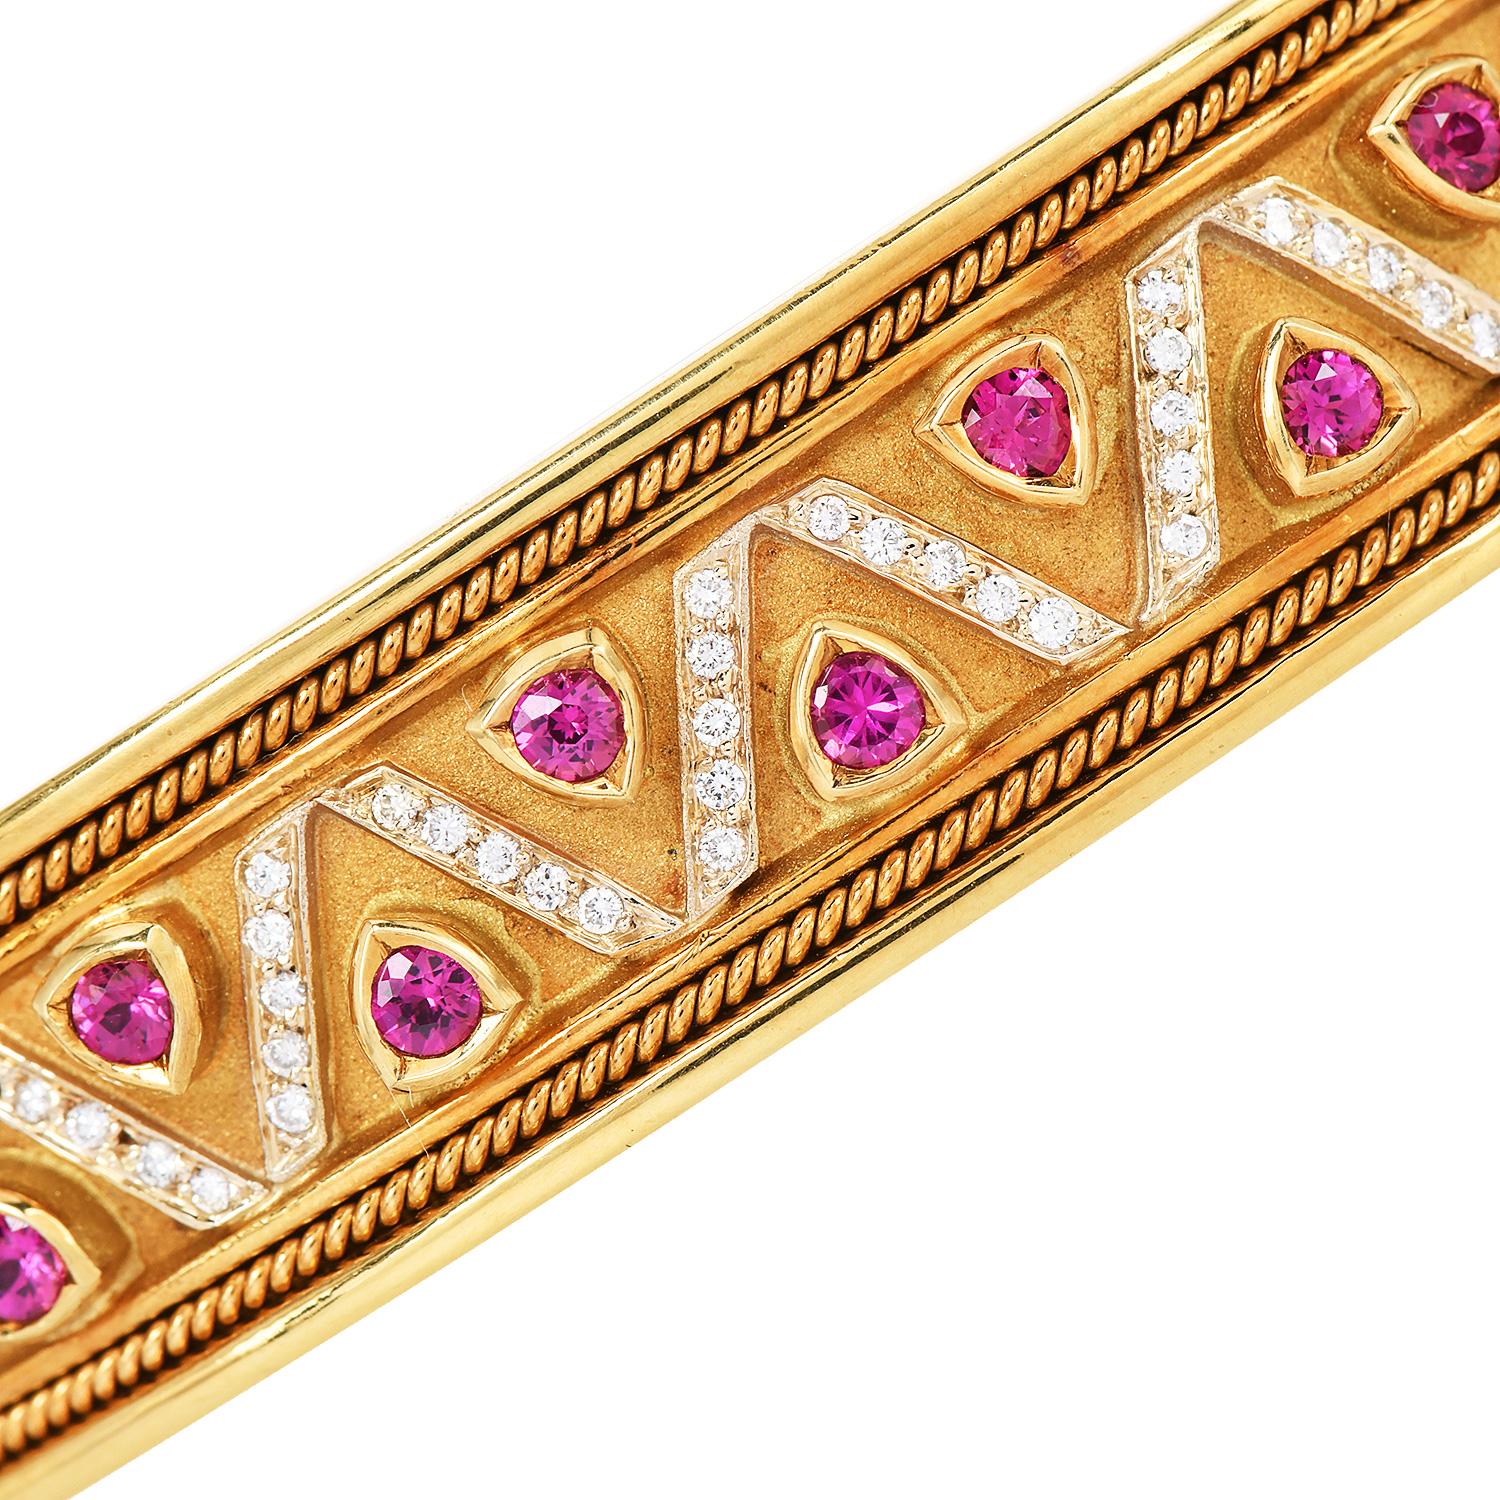 Ce bracelet manchette des années 1980 est en or jaune massif 18 carats avec des rubis et des diamants authentiques.

Le bracelet est orné de pierres précieuses, de rubis et de diamants sertis dans un motif triangulaire. 

Le bracelet manchette est